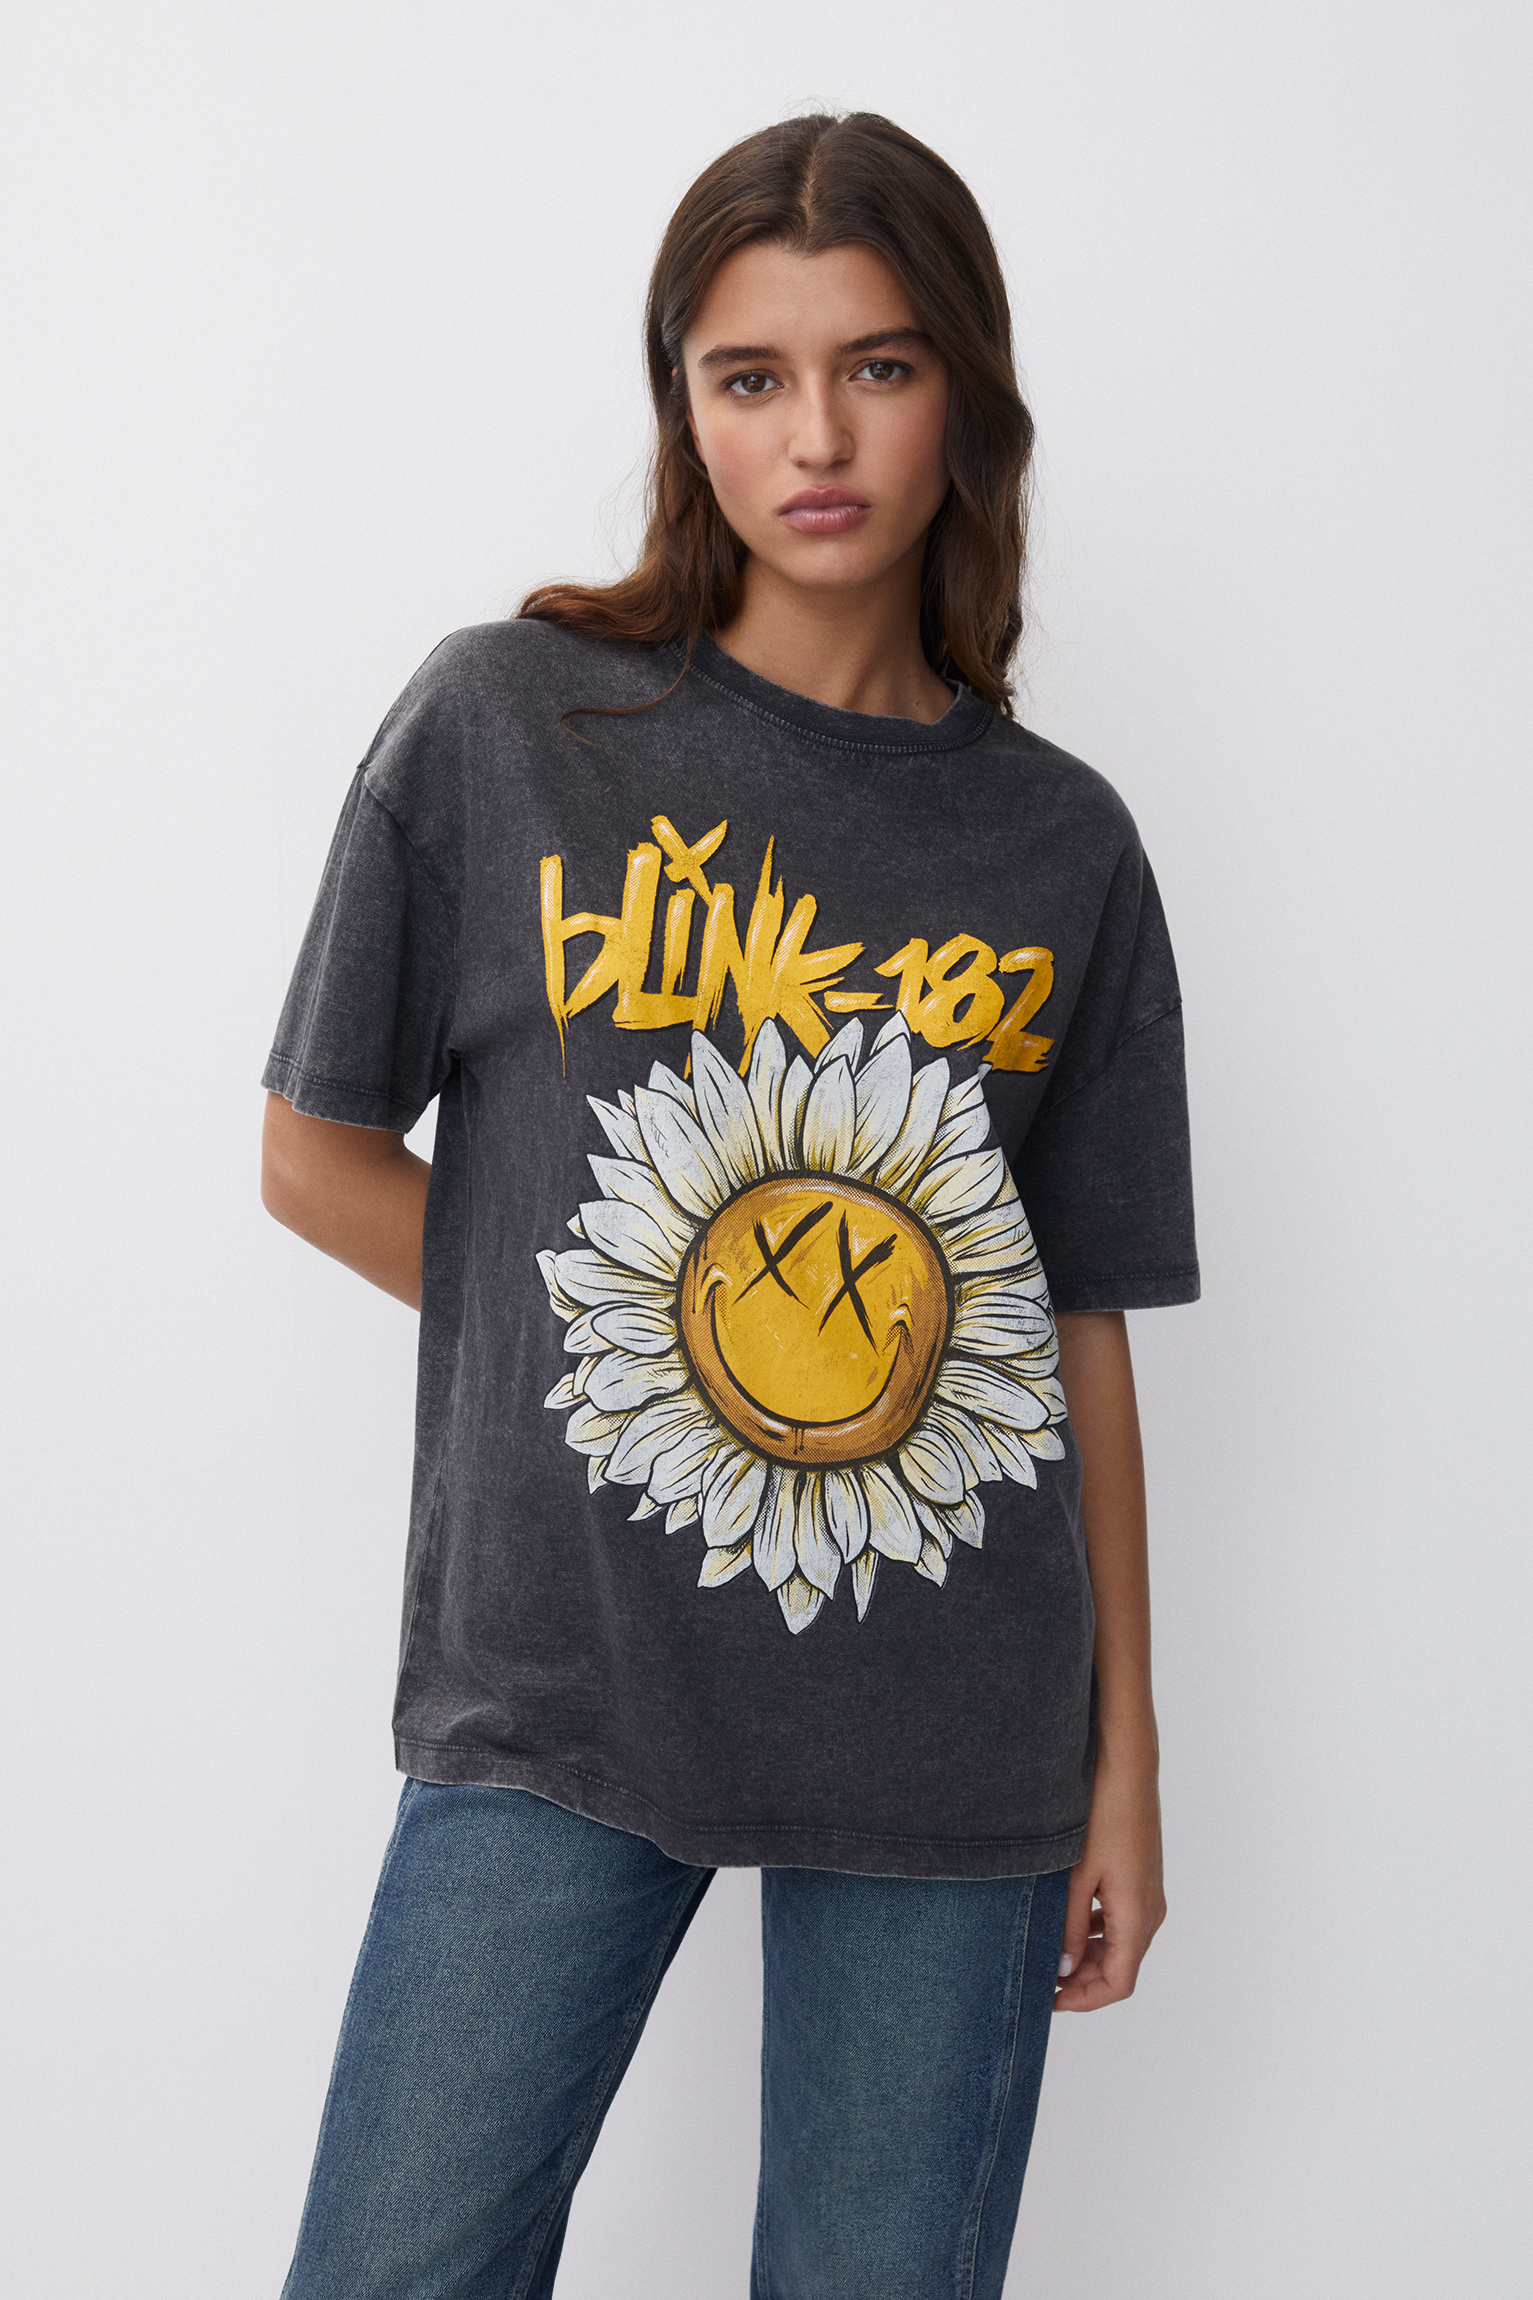 Blink 182 T-shirt - pull&bear